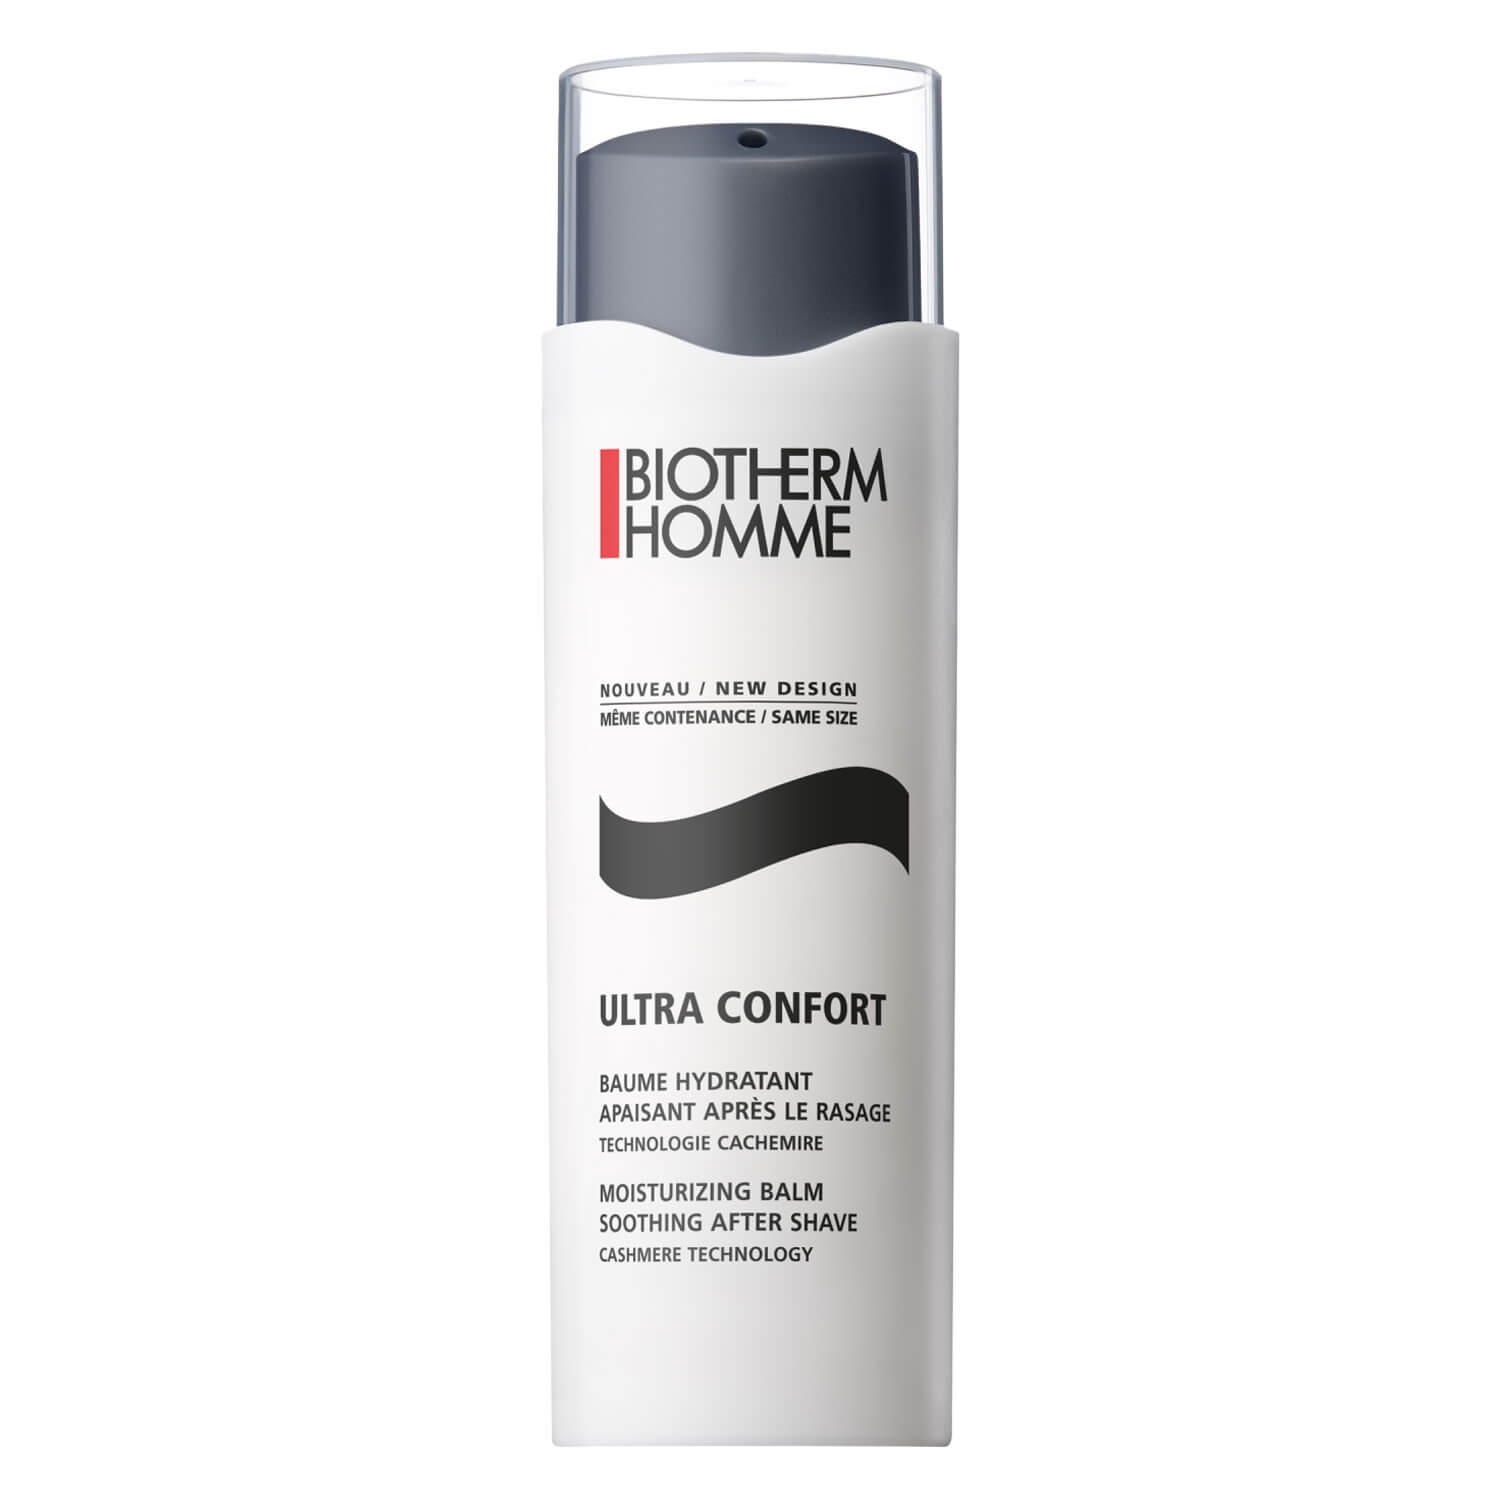 Produktbild von Biotherm Homme - Basics Line Confort Balm